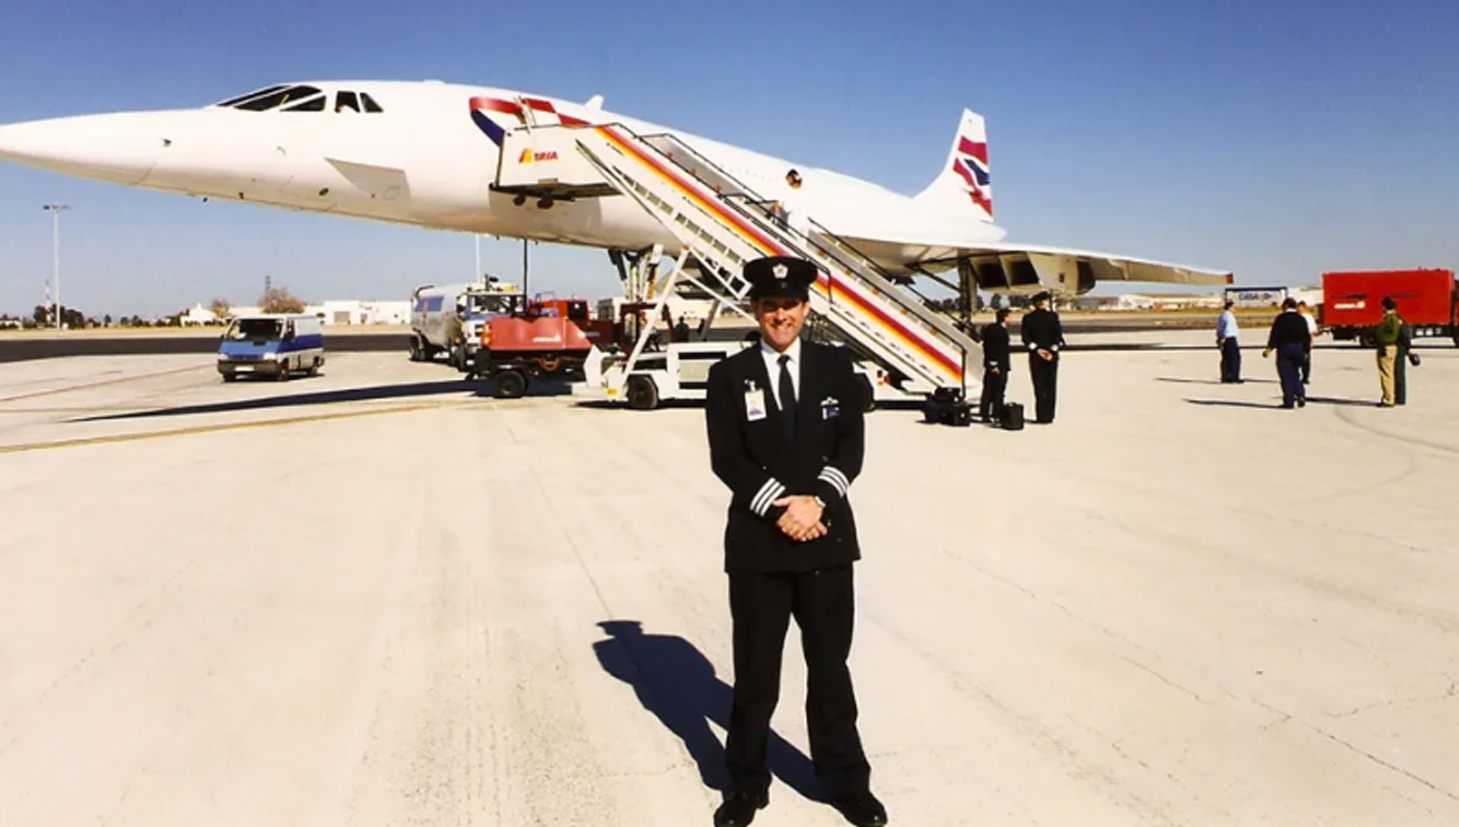 Máy bay siêu thanh Concorde Từ kỳ quan tới thảm hoạ thương mại